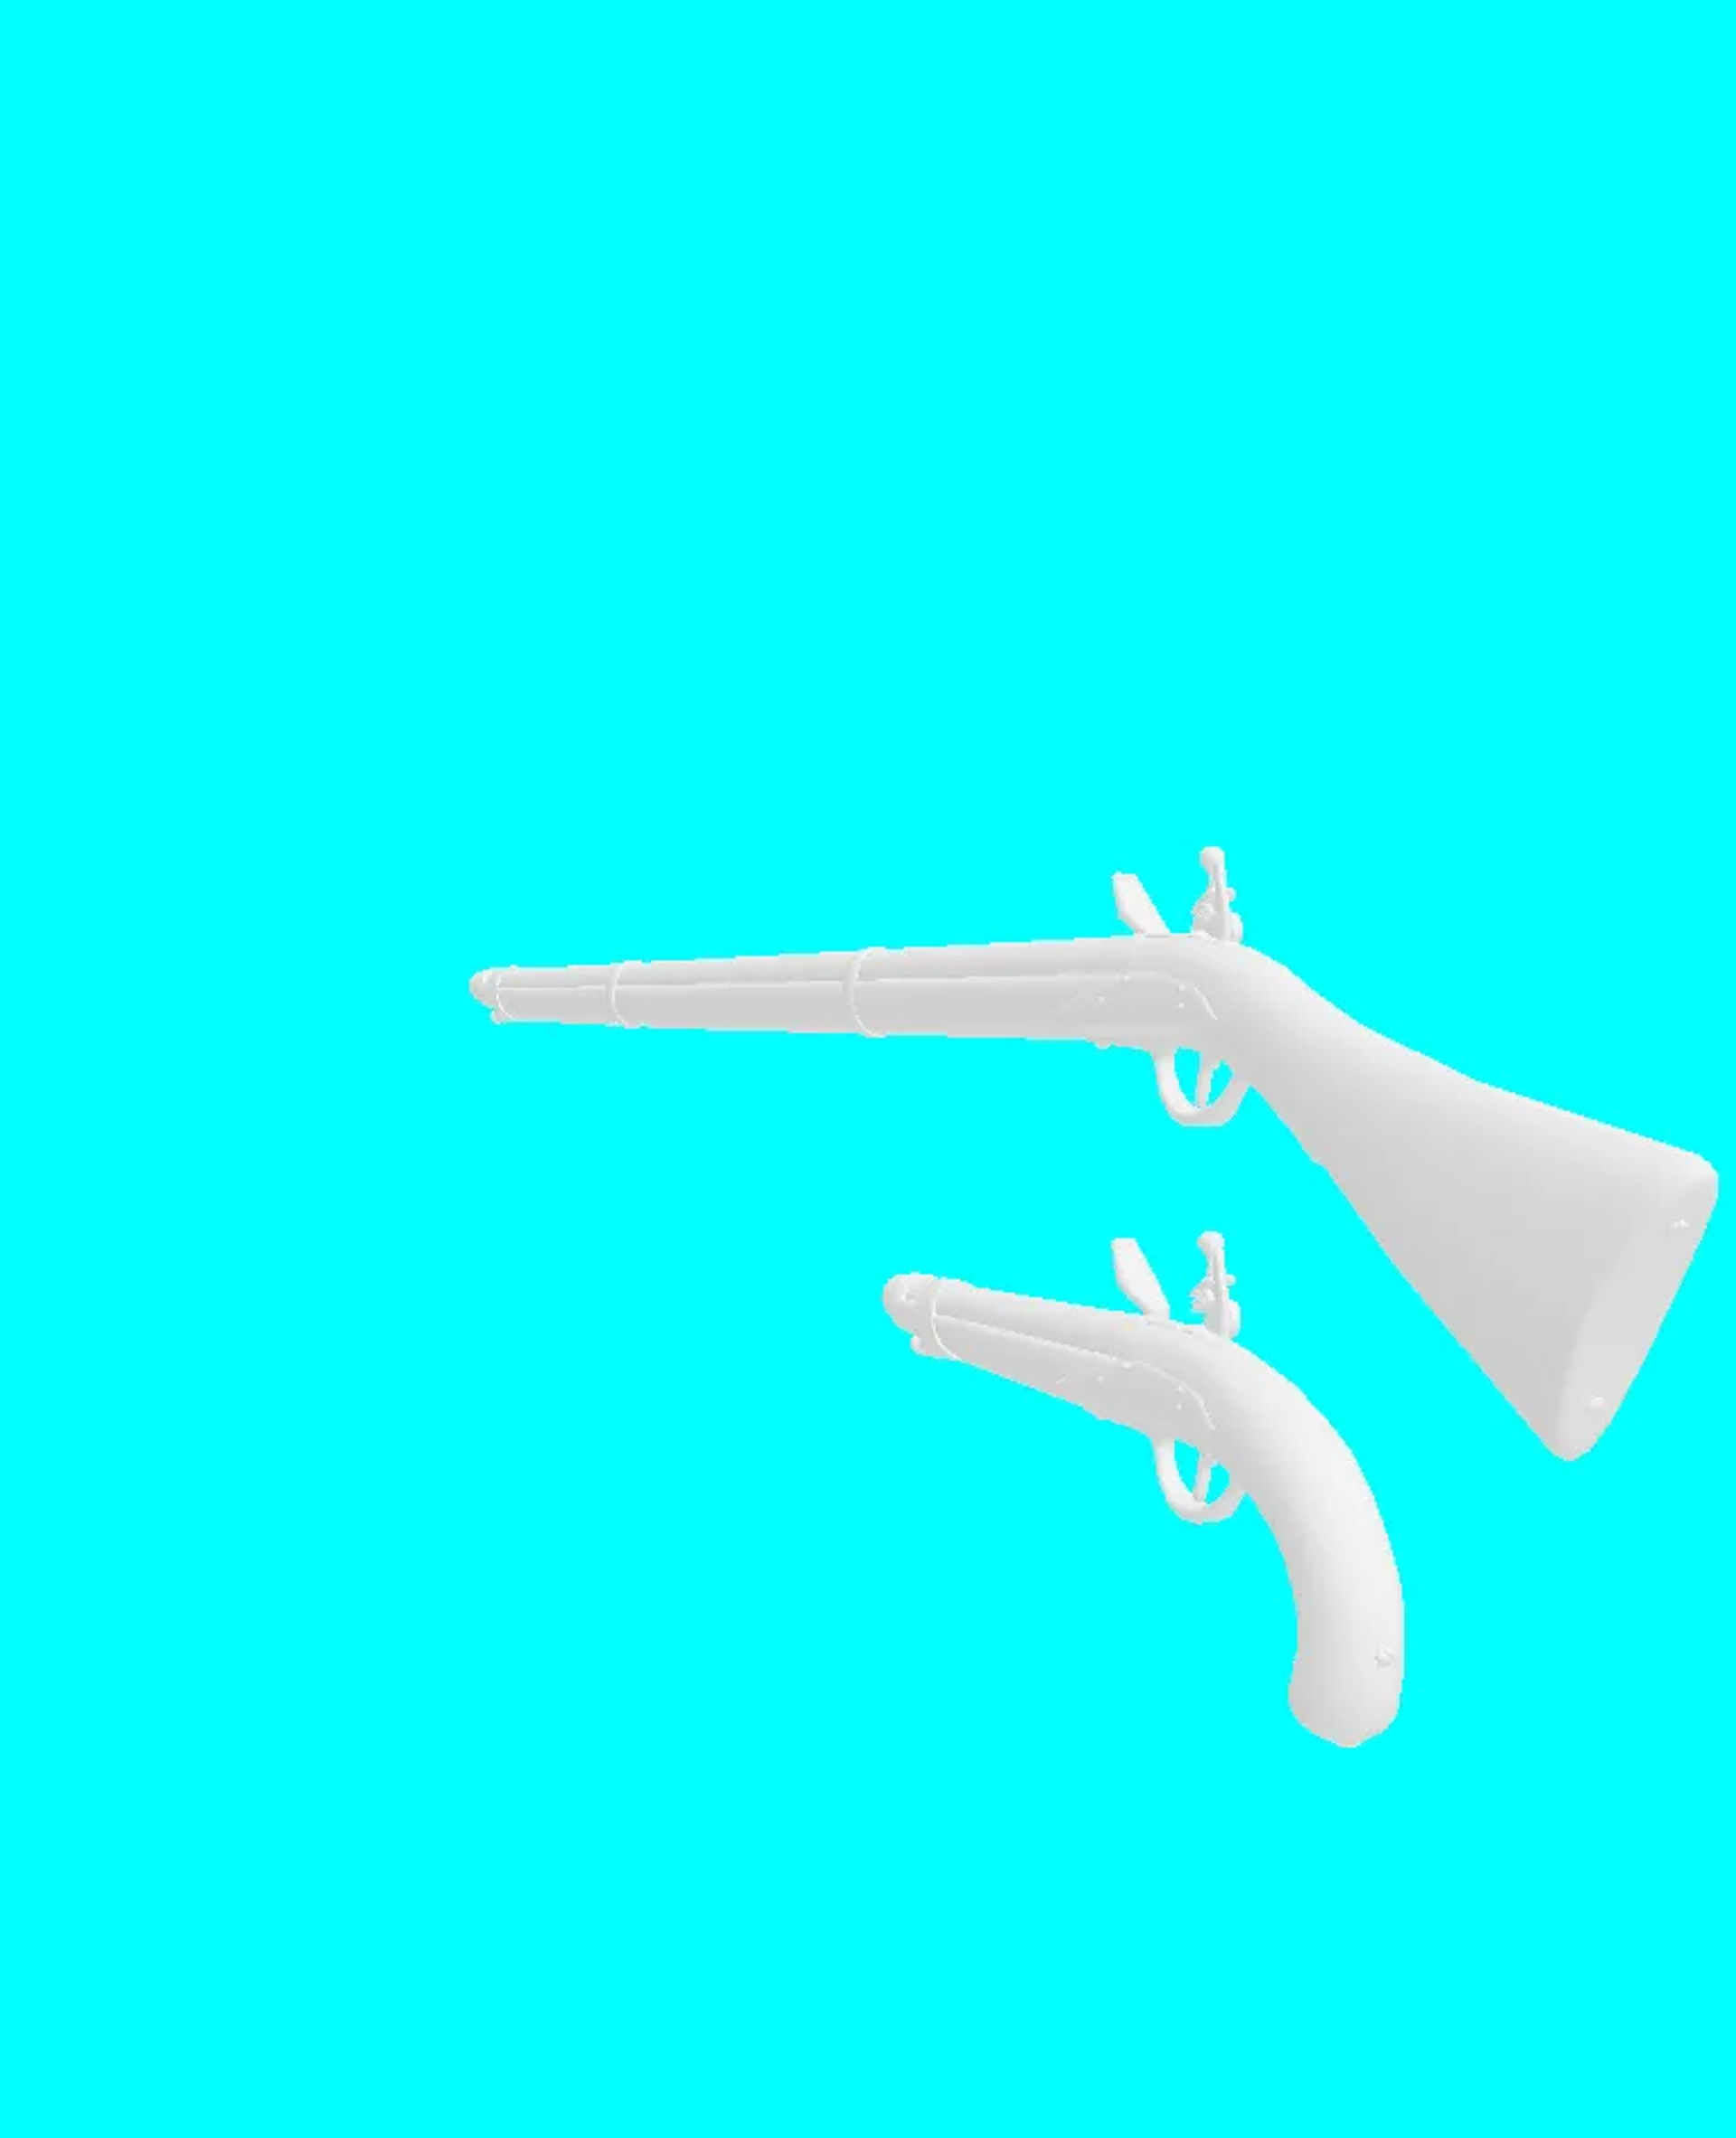 flintlock guns